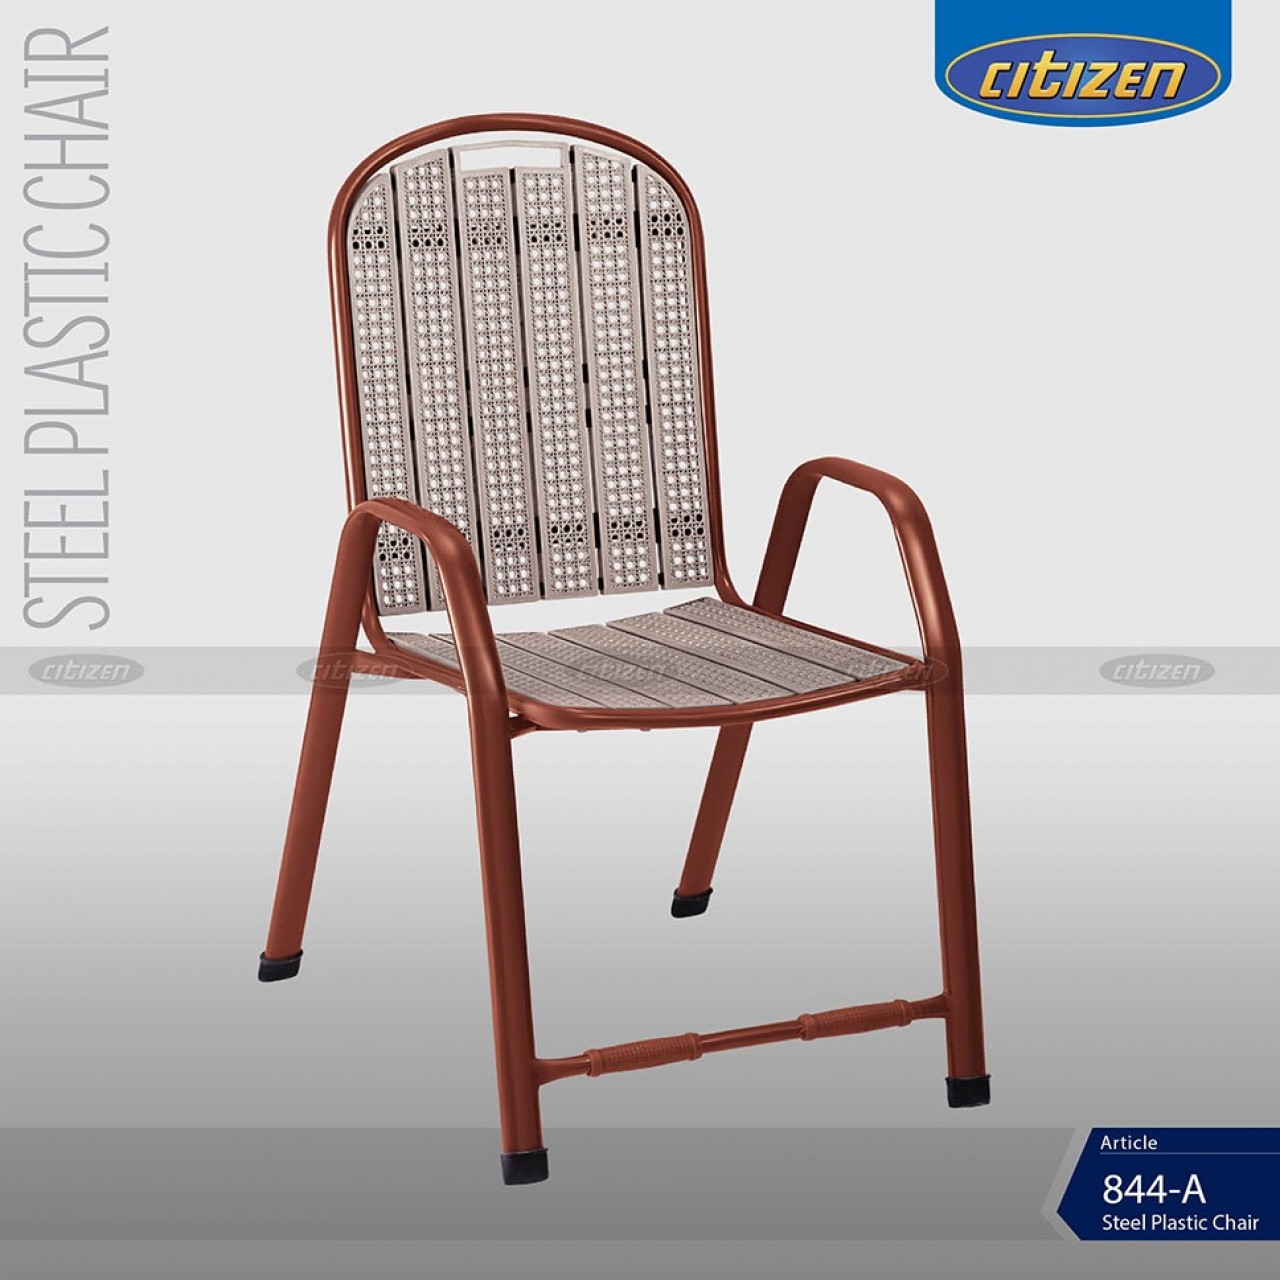 Citizen 844-A Steel & Plastic Chair - Indoor & Outdoor Home Furniture